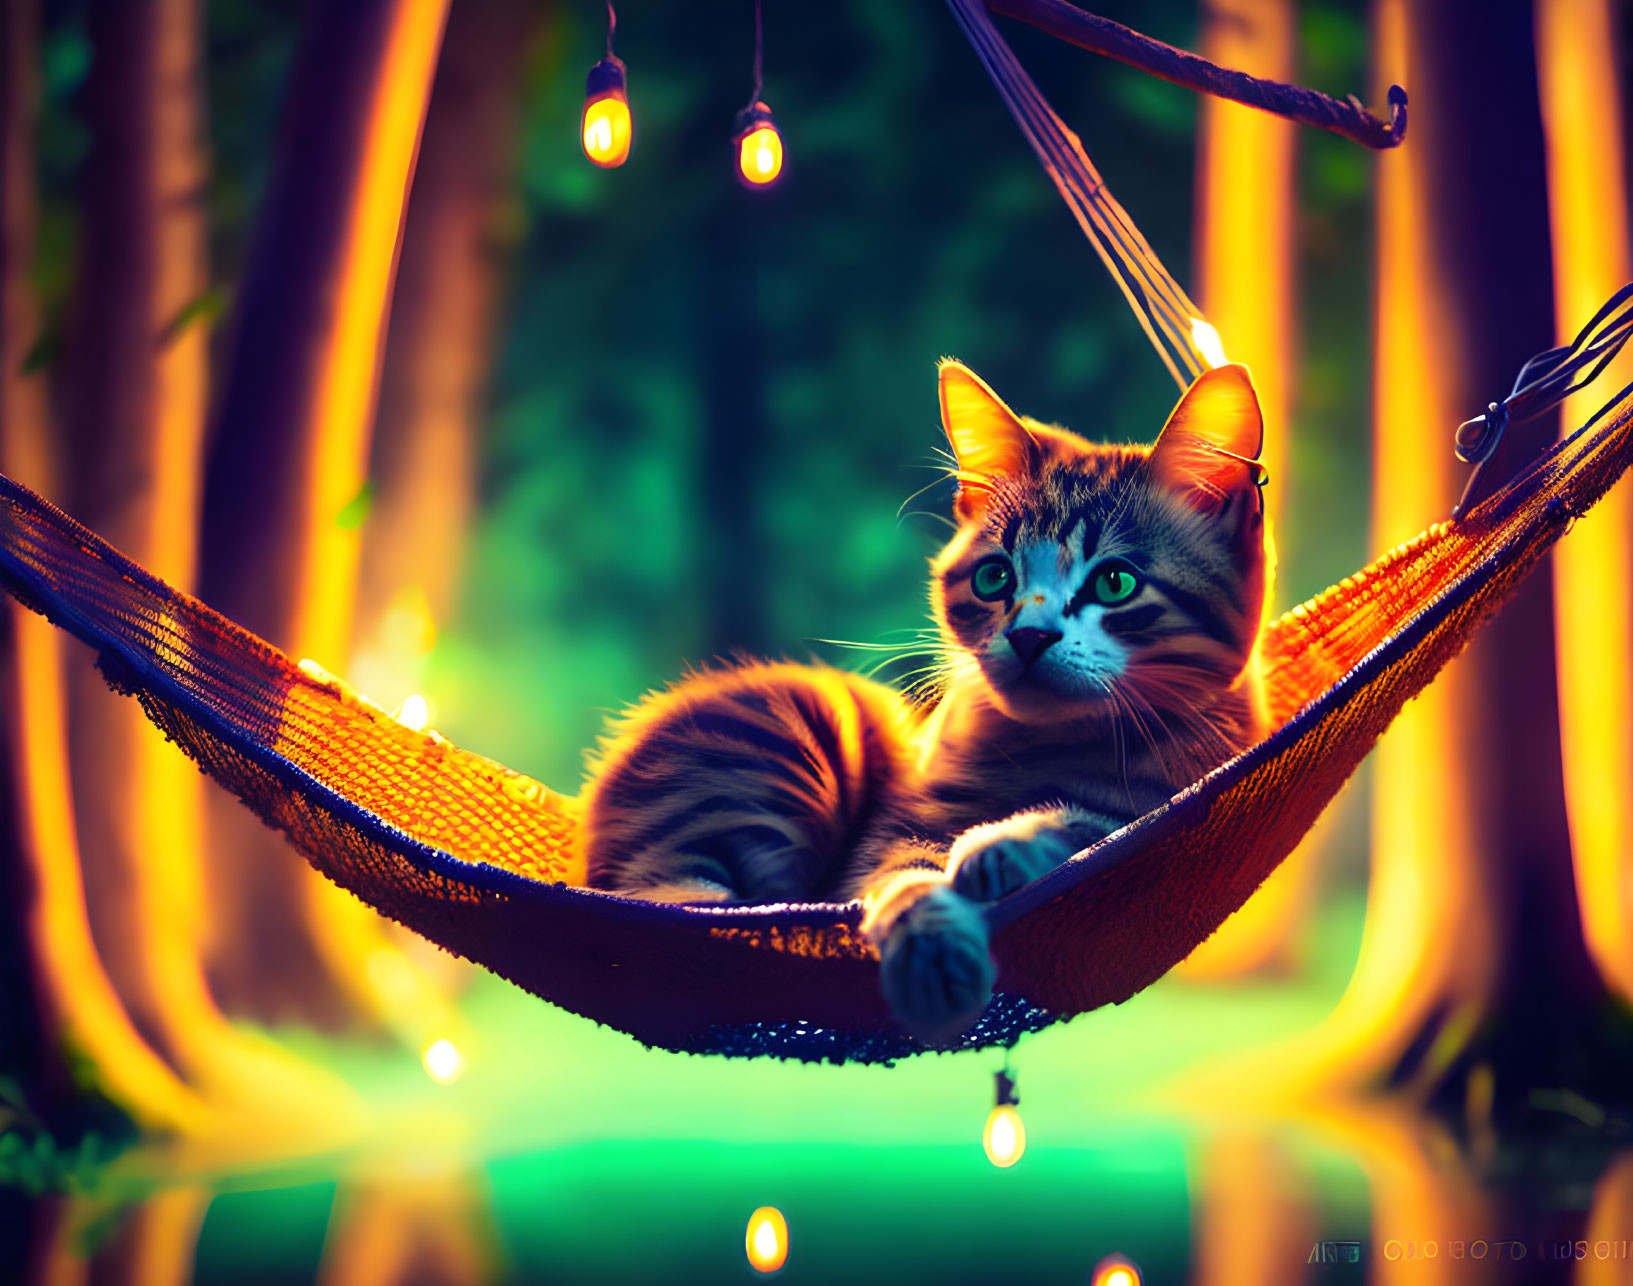 Hanging Cat